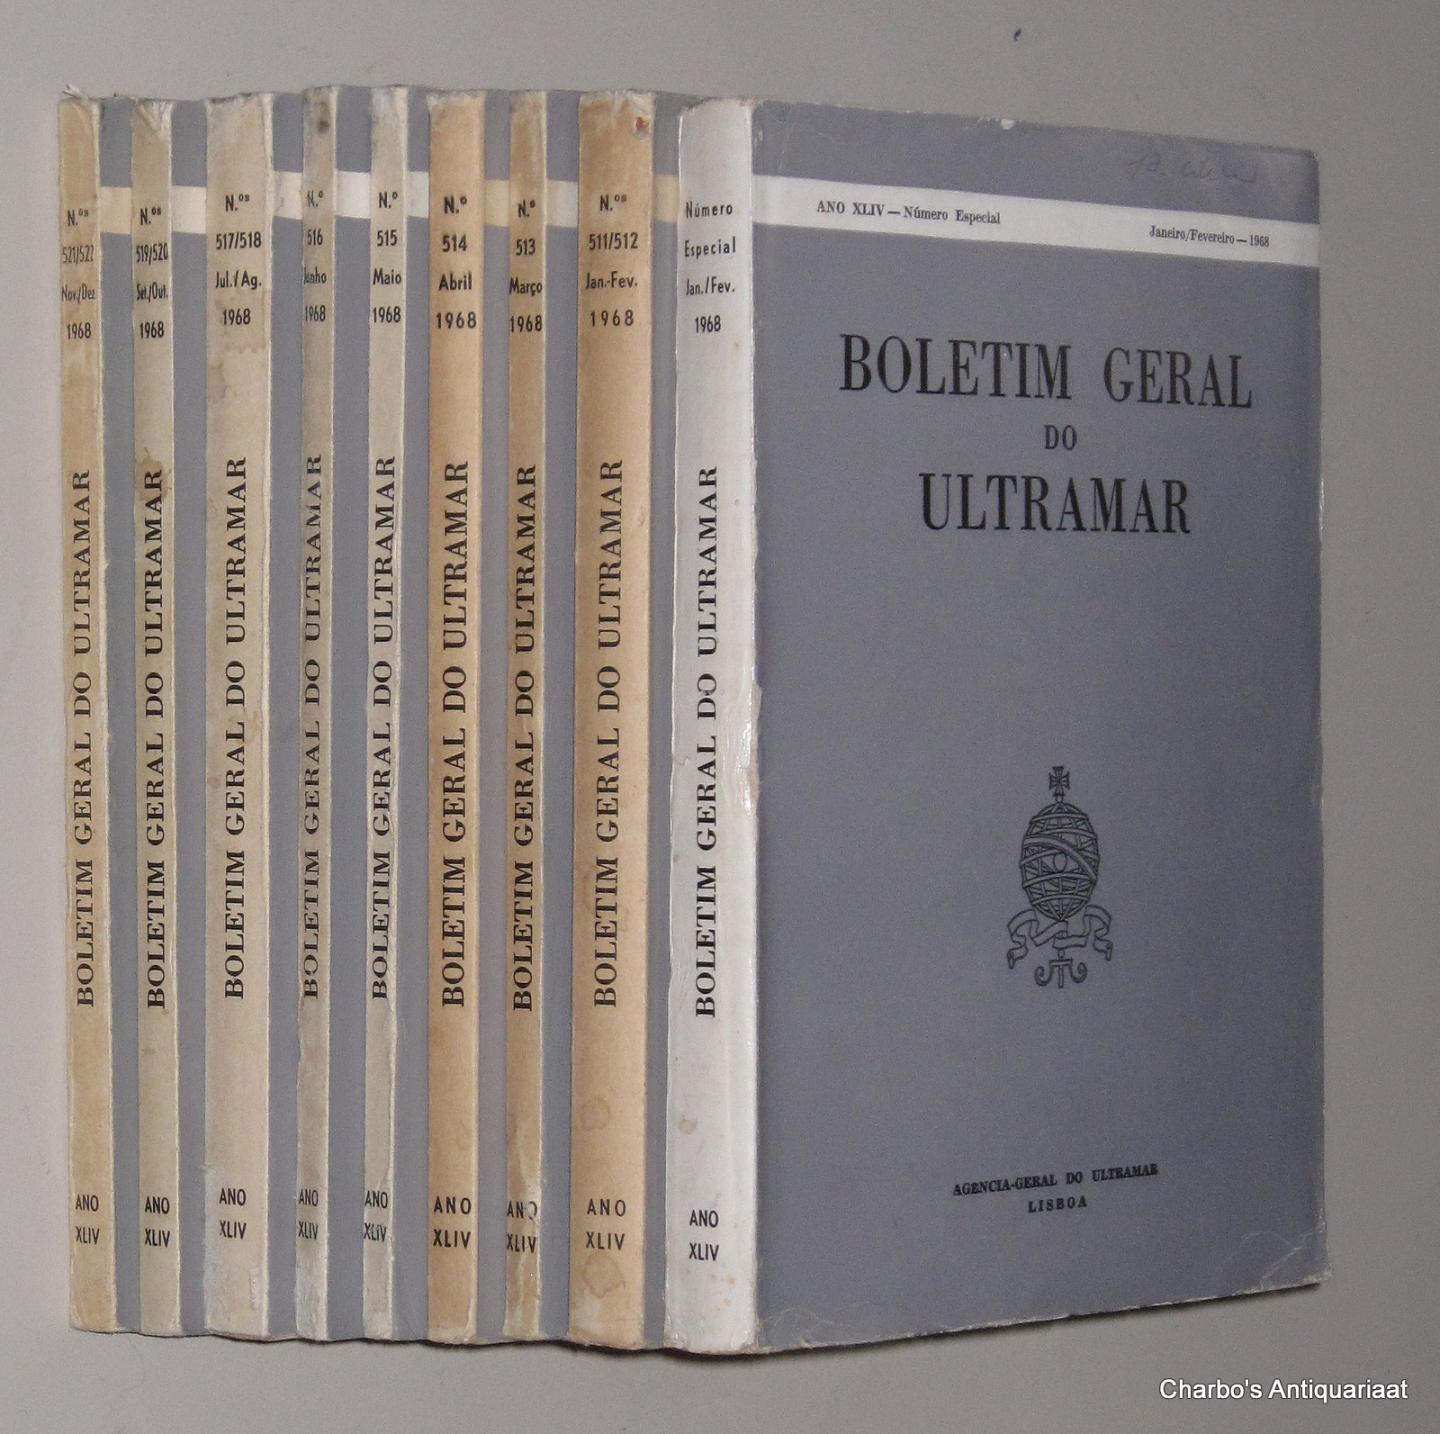 AGENCIA GERAL DO ULTRAMAR, - Boletim Geral do Ultramar, ano XLIV No. 511, Janeiro - No. 522, Dezembro 1968.